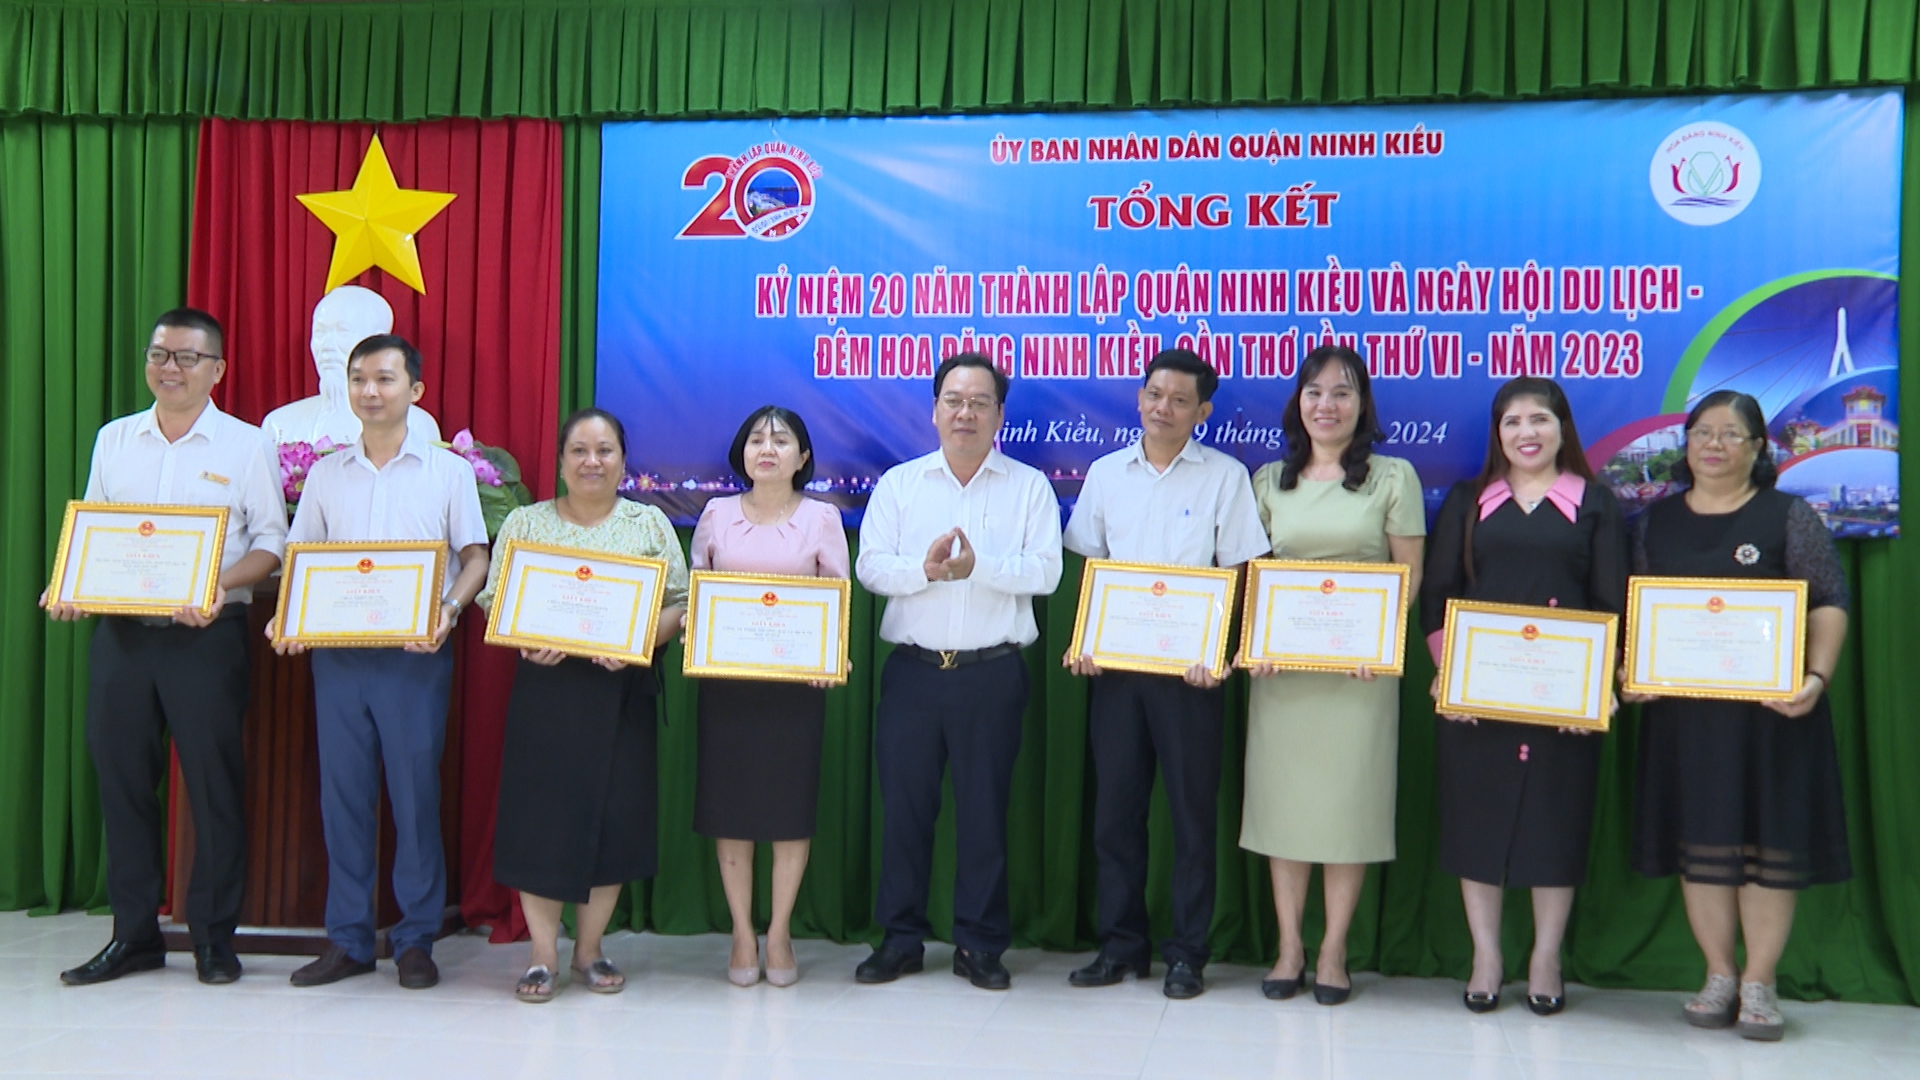 Đại diện lãnh đạo quận Ninh Kiều trao giấy khen cho các tập thể và cá nhân có nhiều đóng góp trong hoạt động kỷ niệm 20 năm thành lập quận 